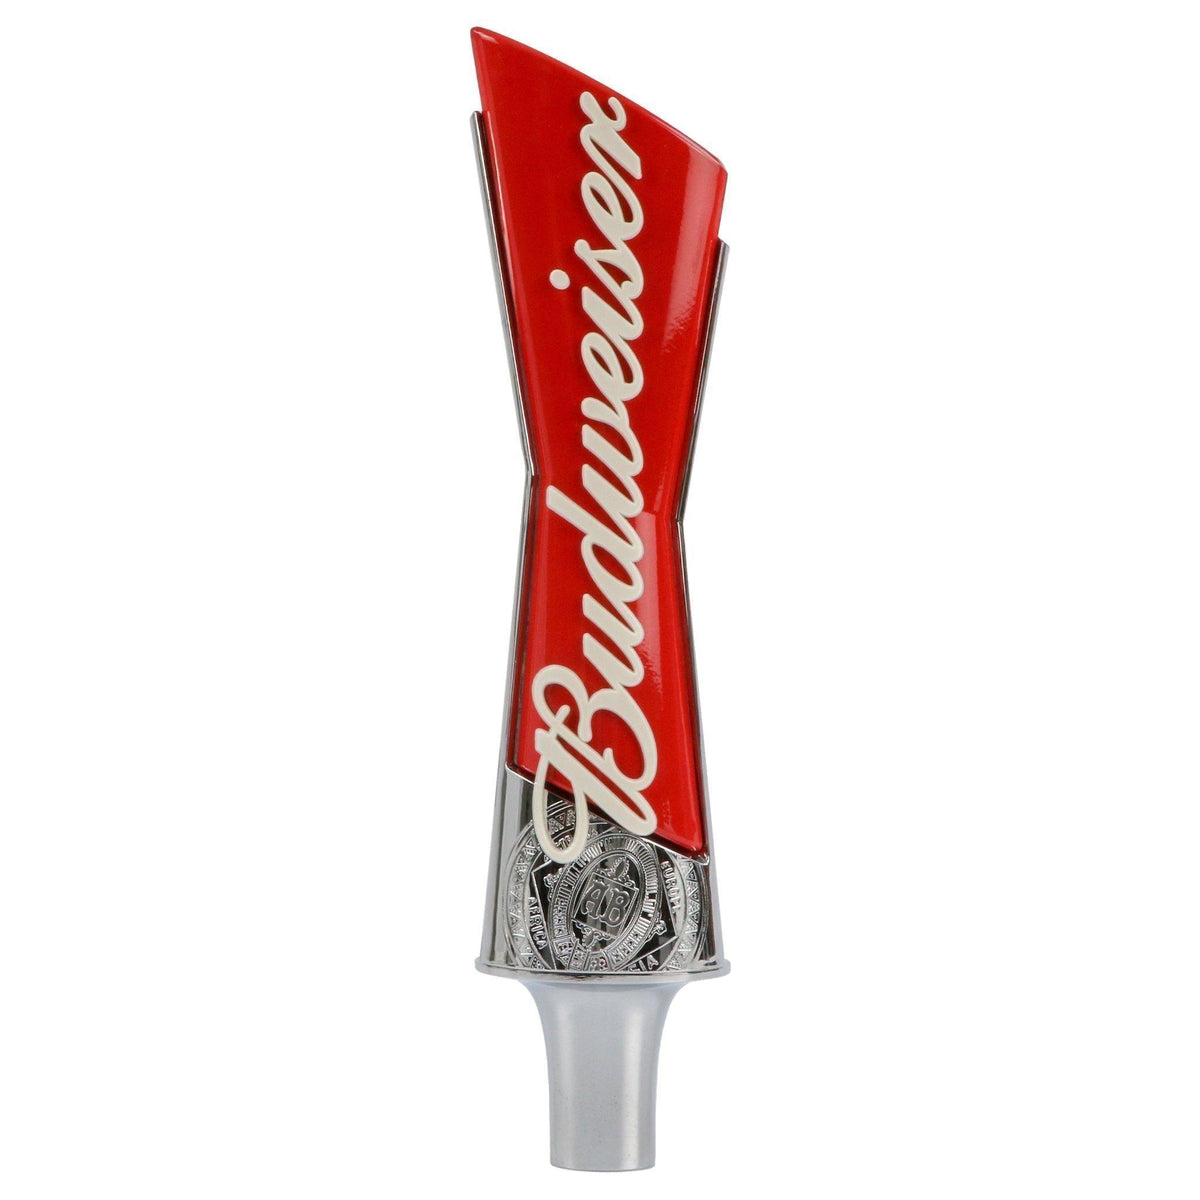 Budweiser St. Louis Cardinals Beer Coaster